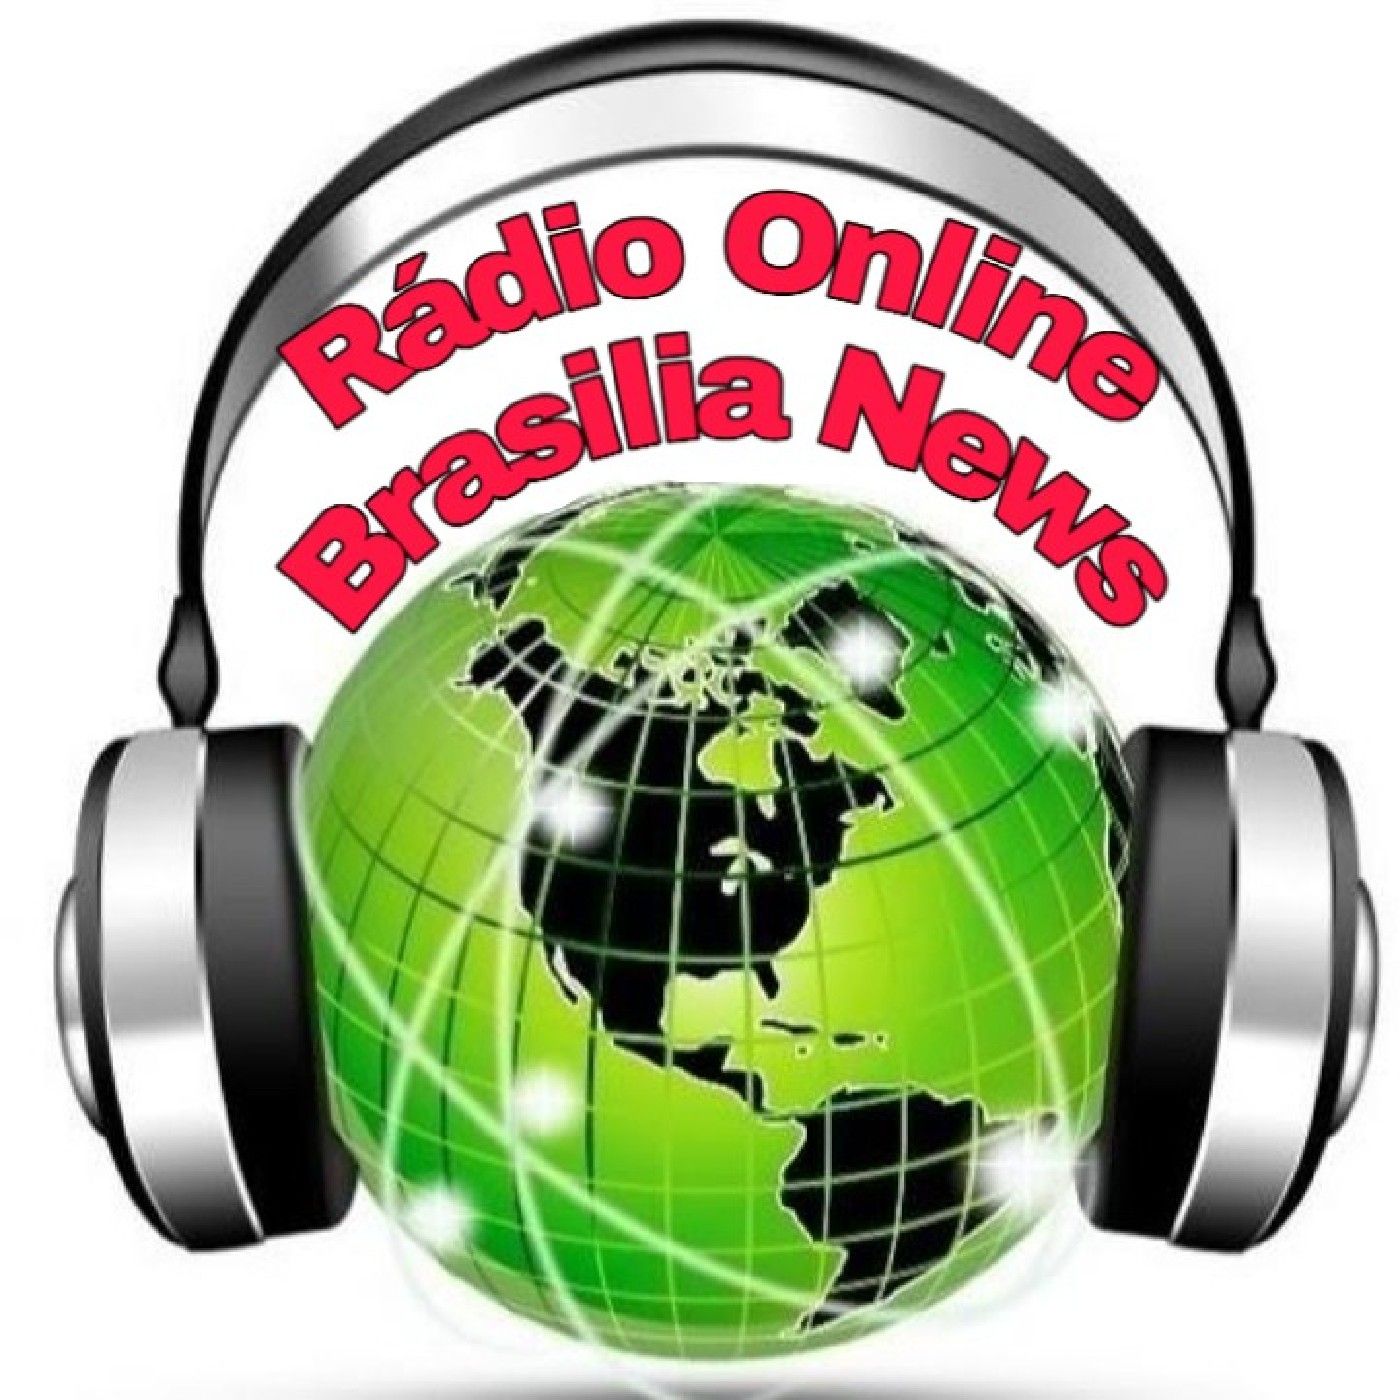 Brasília News Ao Vivo